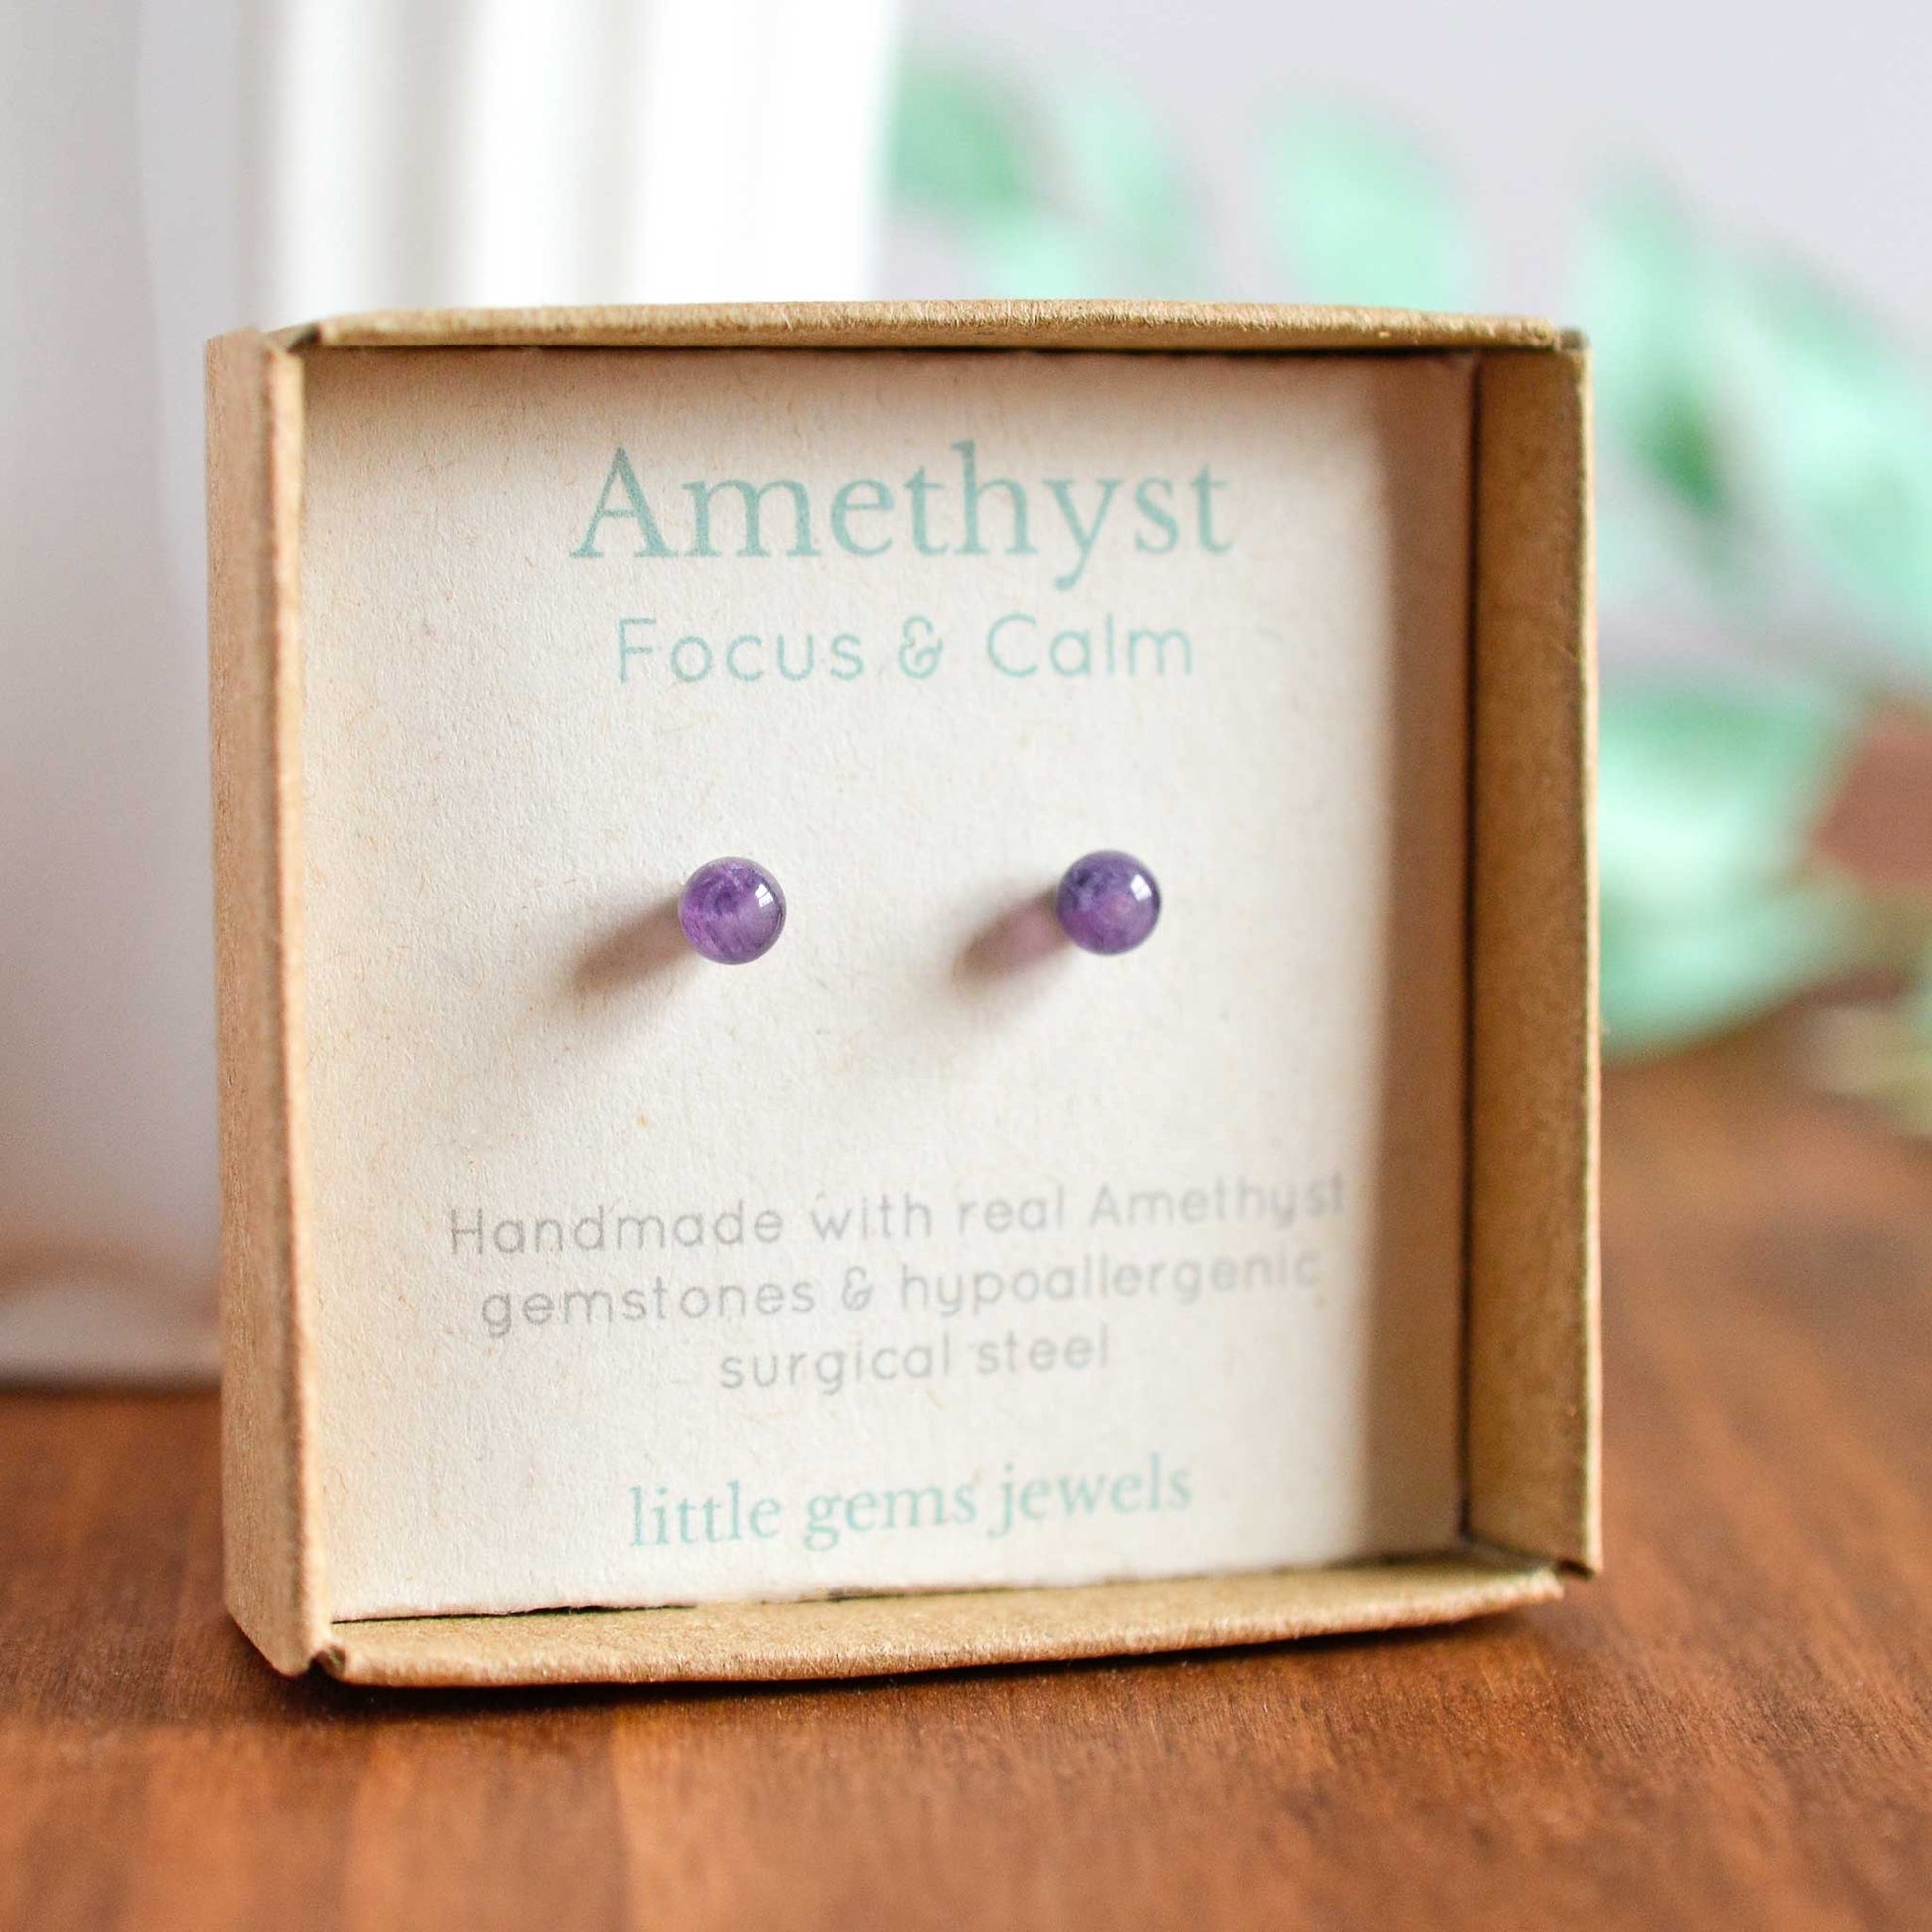 Small purple Amethyst stud earrings in eco friendly gift box